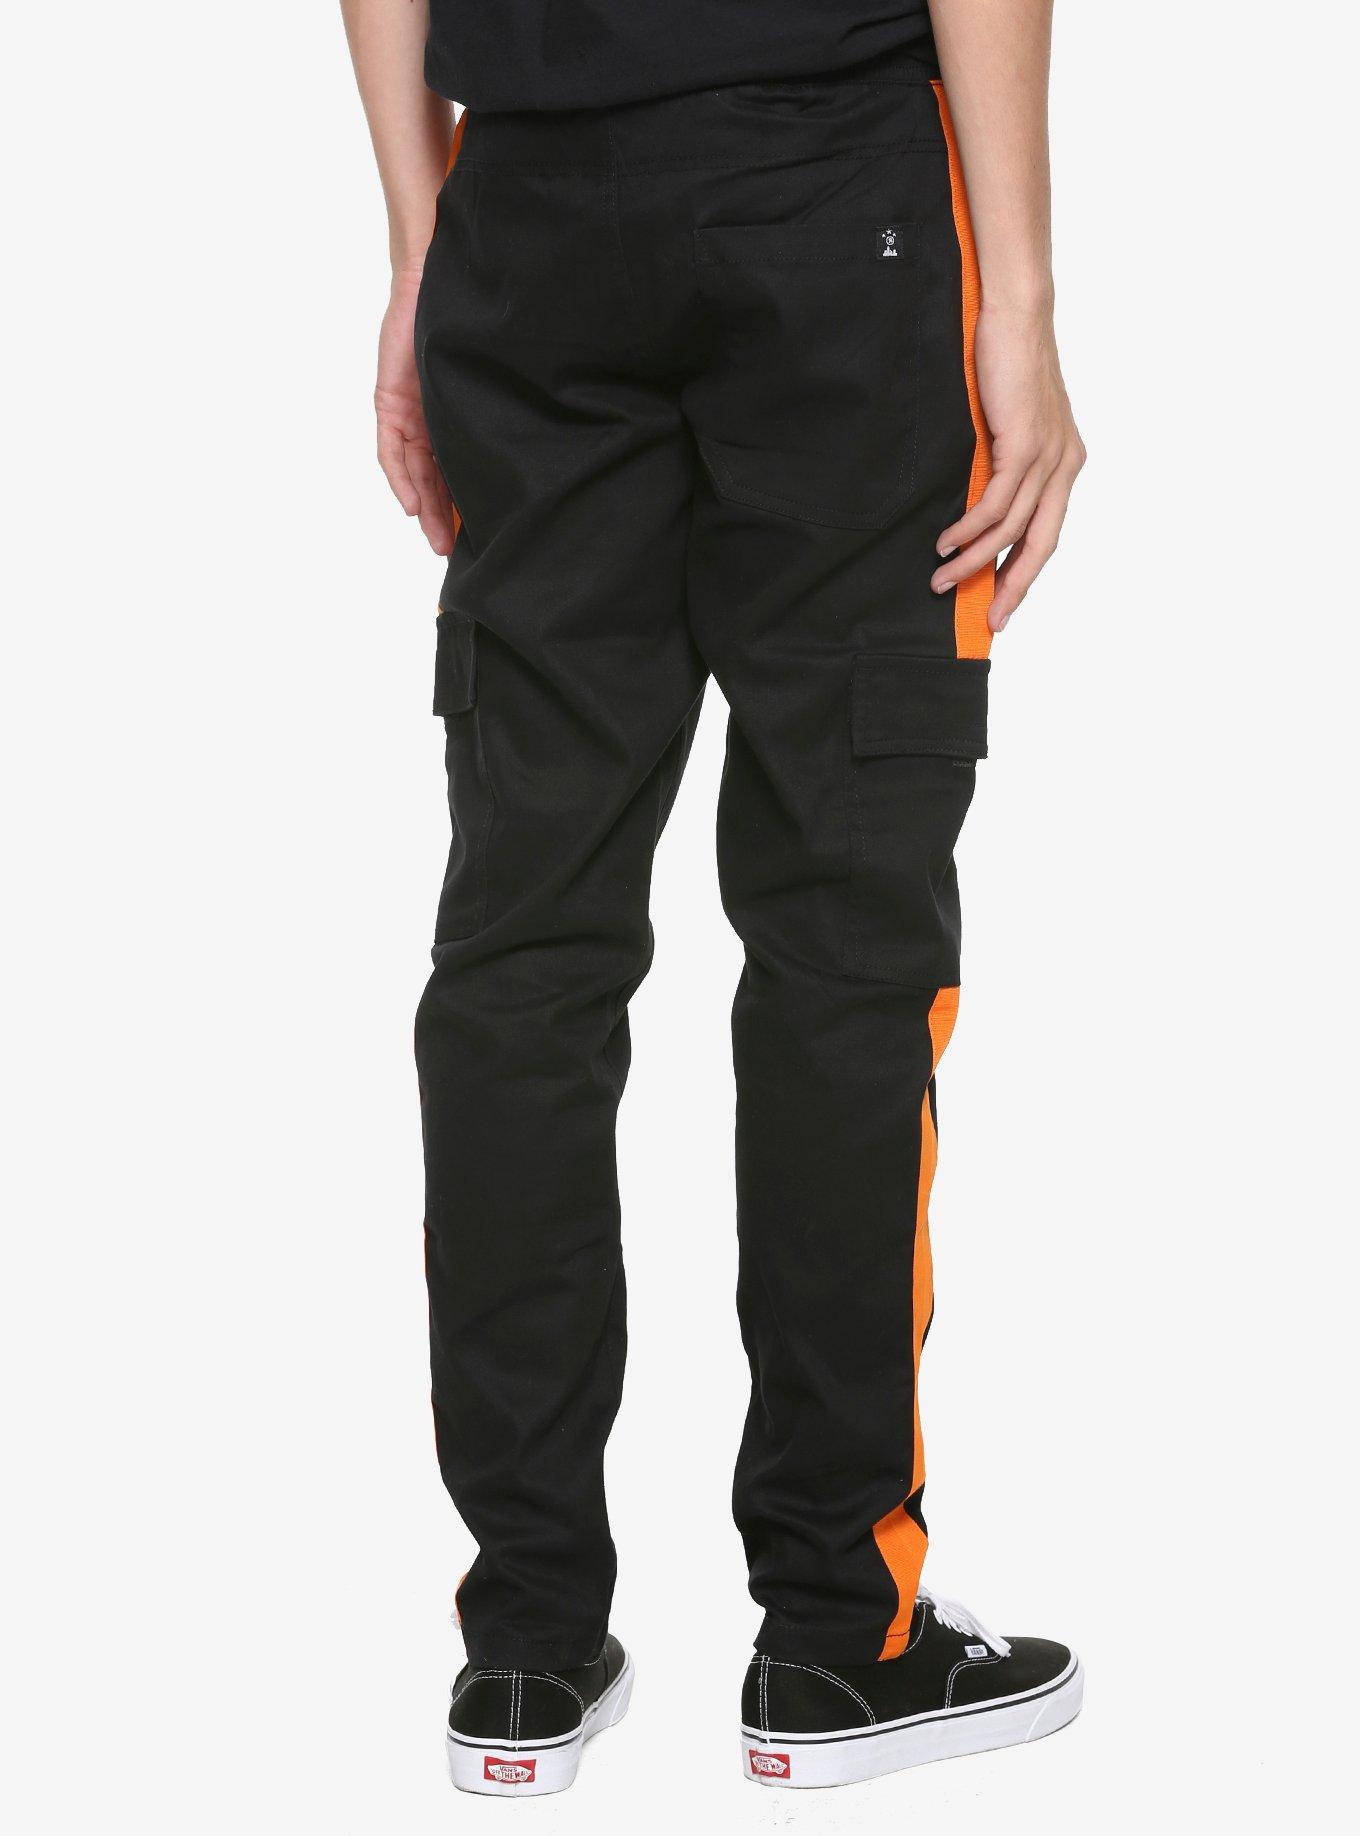 Orange Strip Drawstring Cargo Pants, BLACK, alternate